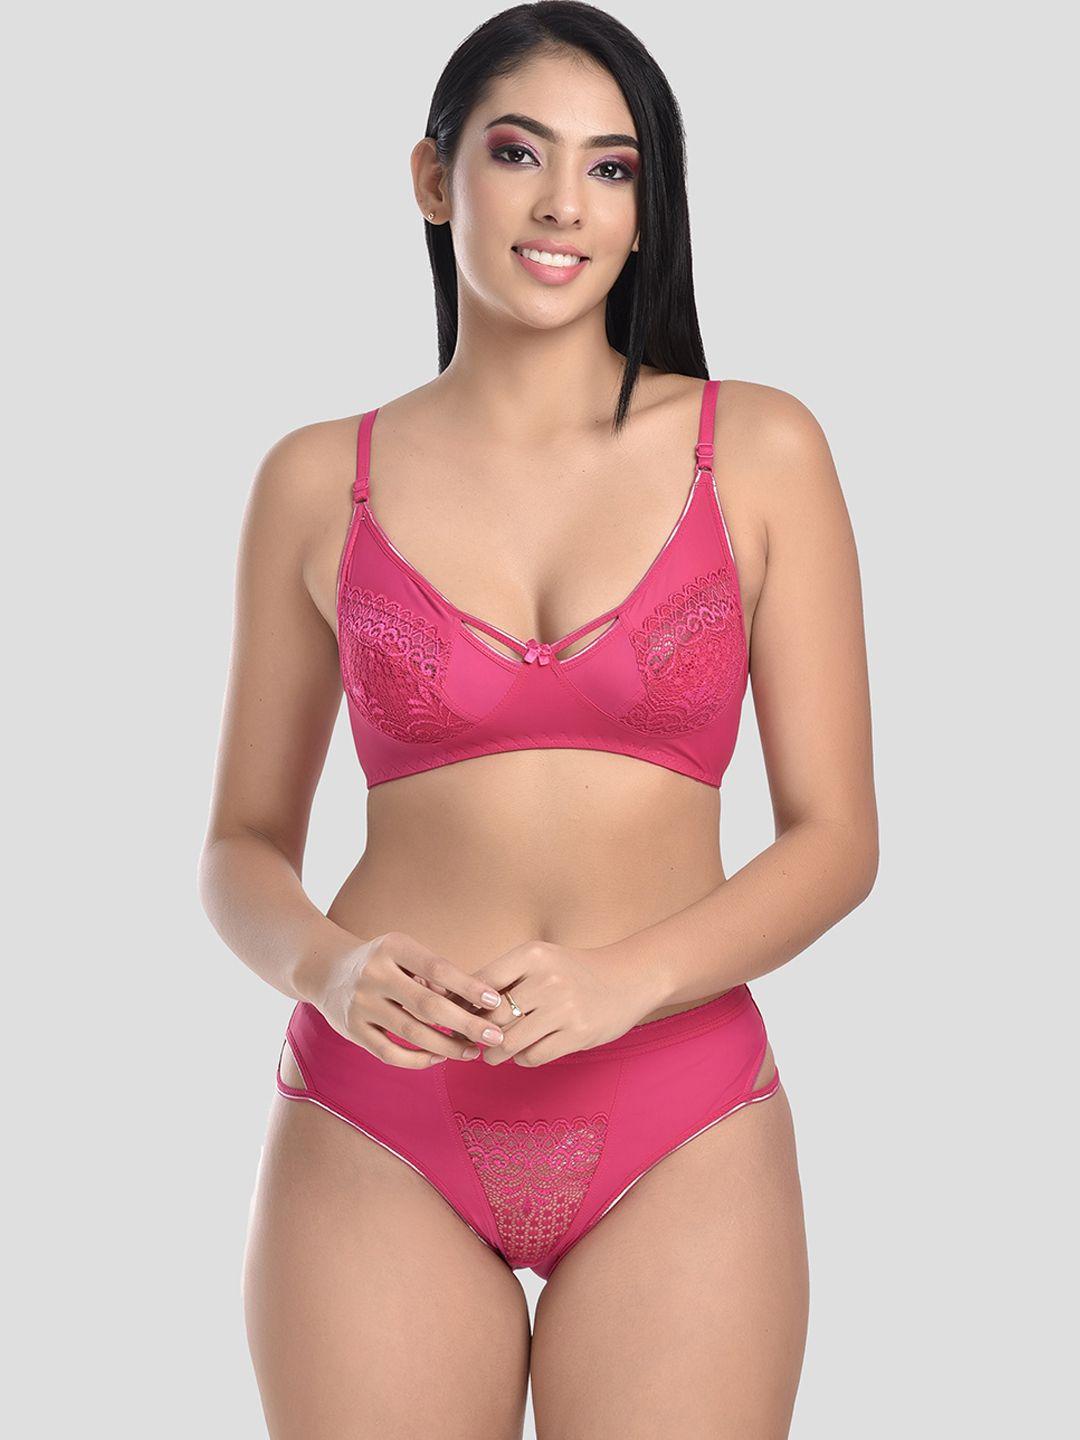 styfun women pink self design non-padded lingerie set-s_kareena_set_1_pink_b